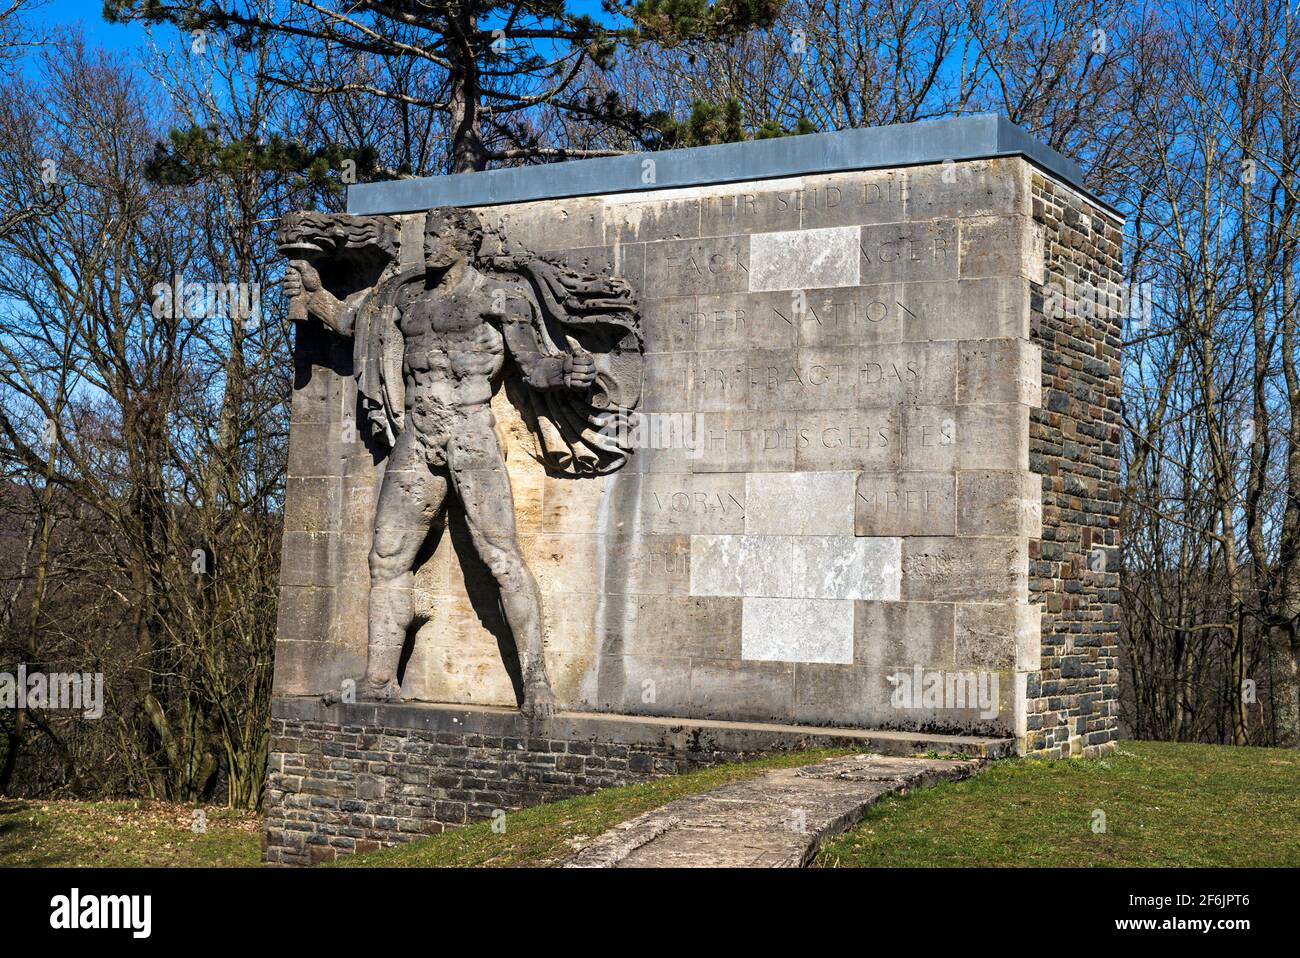 Ordensburg Vogelsang nel Parco Nazionale di Eifel, Germania. L'ex tenuta nazista ha da allora servito come campo di addestramento militare per gli alleati, prima dell'apertura Foto Stock